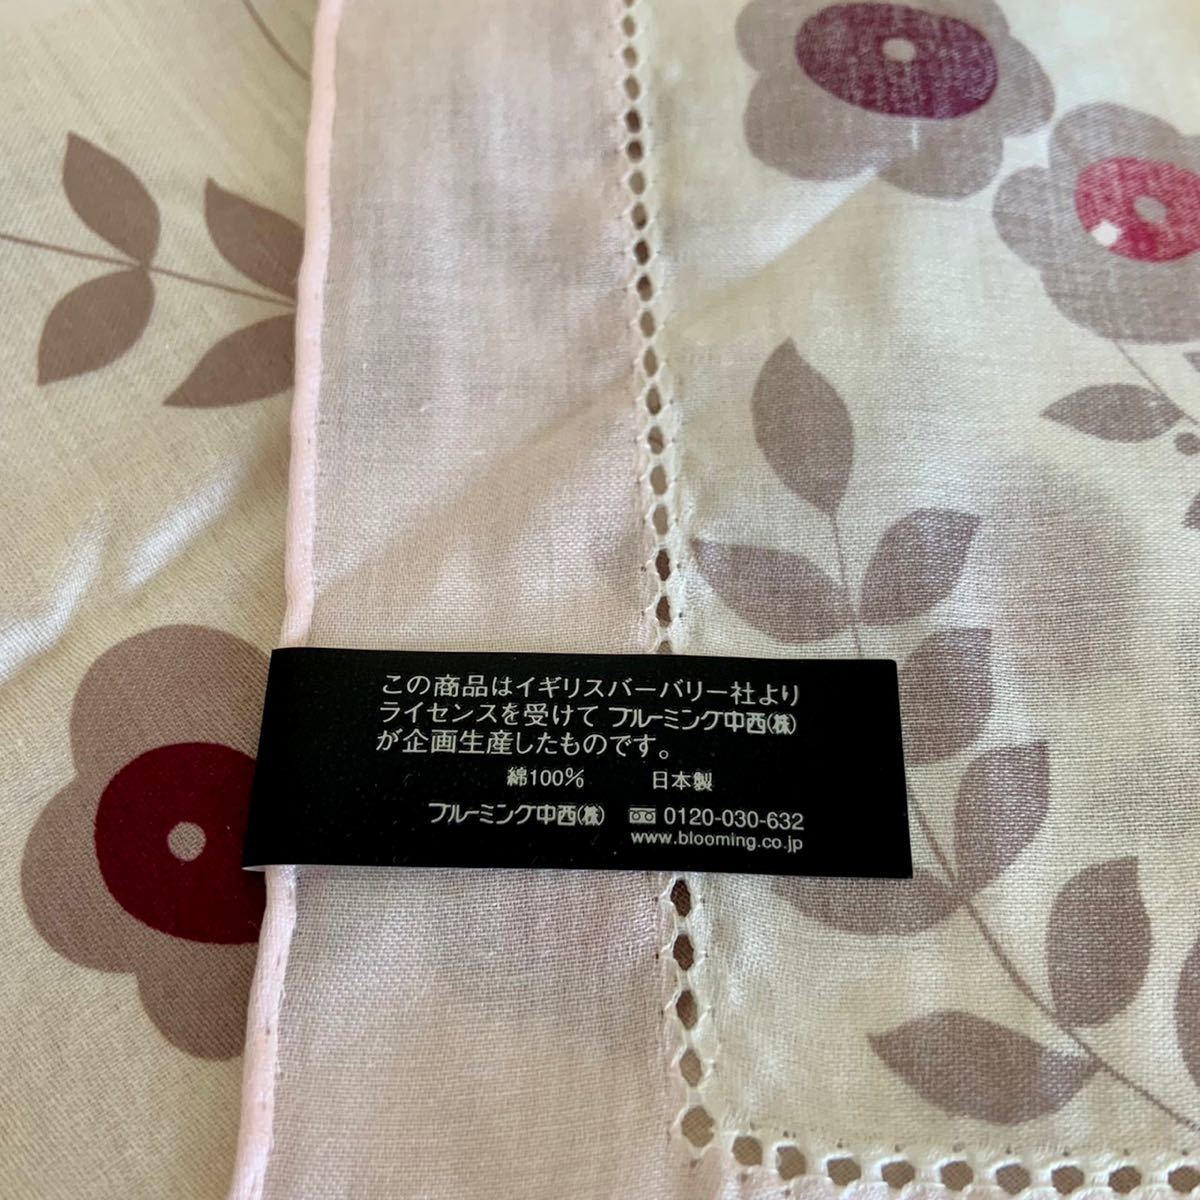 未使用 BURBERRY バーバリー 大判 ハンカチ 約57×57cm 綿100% 日本製 花柄 ホワイト × ピンク系 スカーフ 膝掛け にも